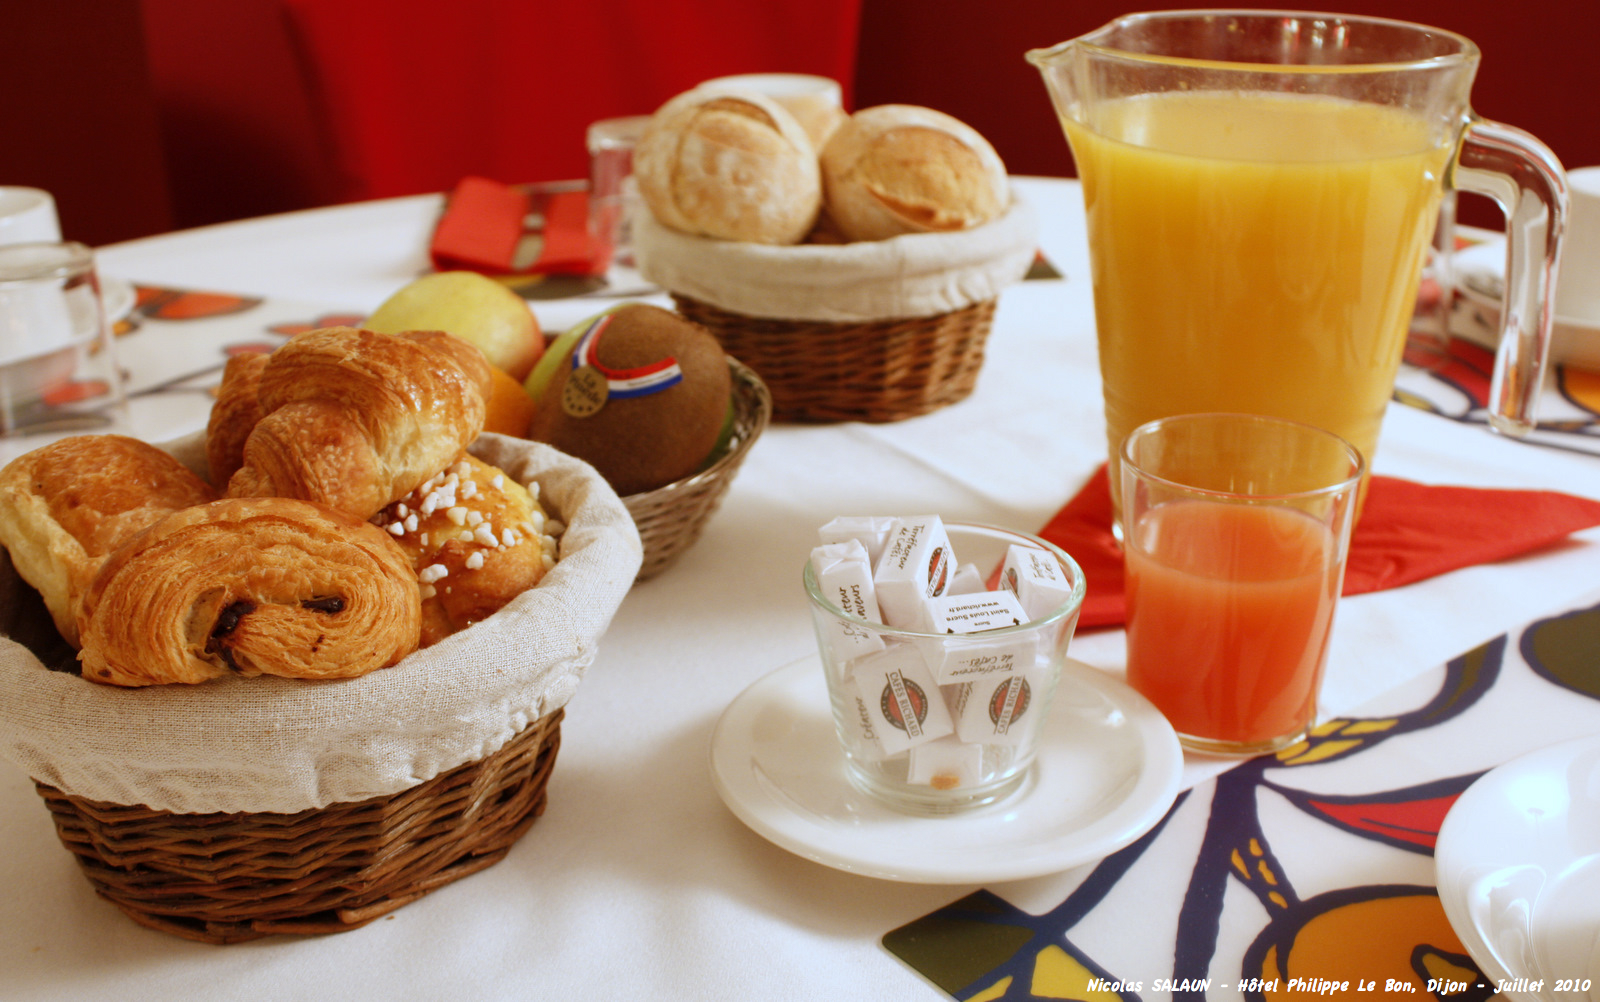 Le petit déjeuner est nécessaire pour donner des forces pour bien commencer la journée. © Nicolas SAL 1, Flickr, cc by nc nd 2.0